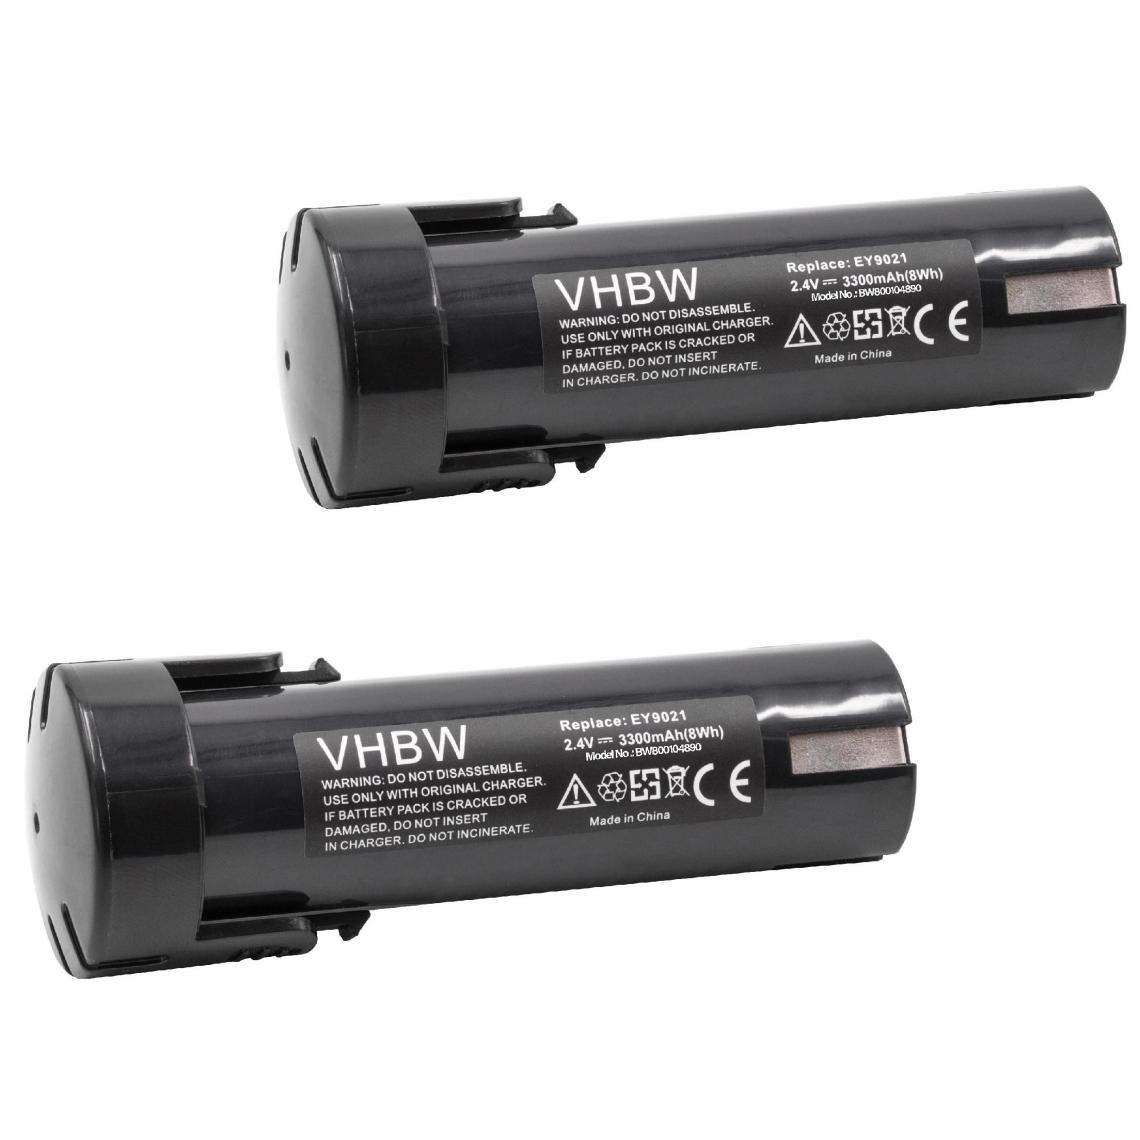 Vhbw - vhbw 2x Batterie remplacement pour Weidmüller 9007450000 pour outil électrique (3300mAh NiMH 2,4V) - Clouterie